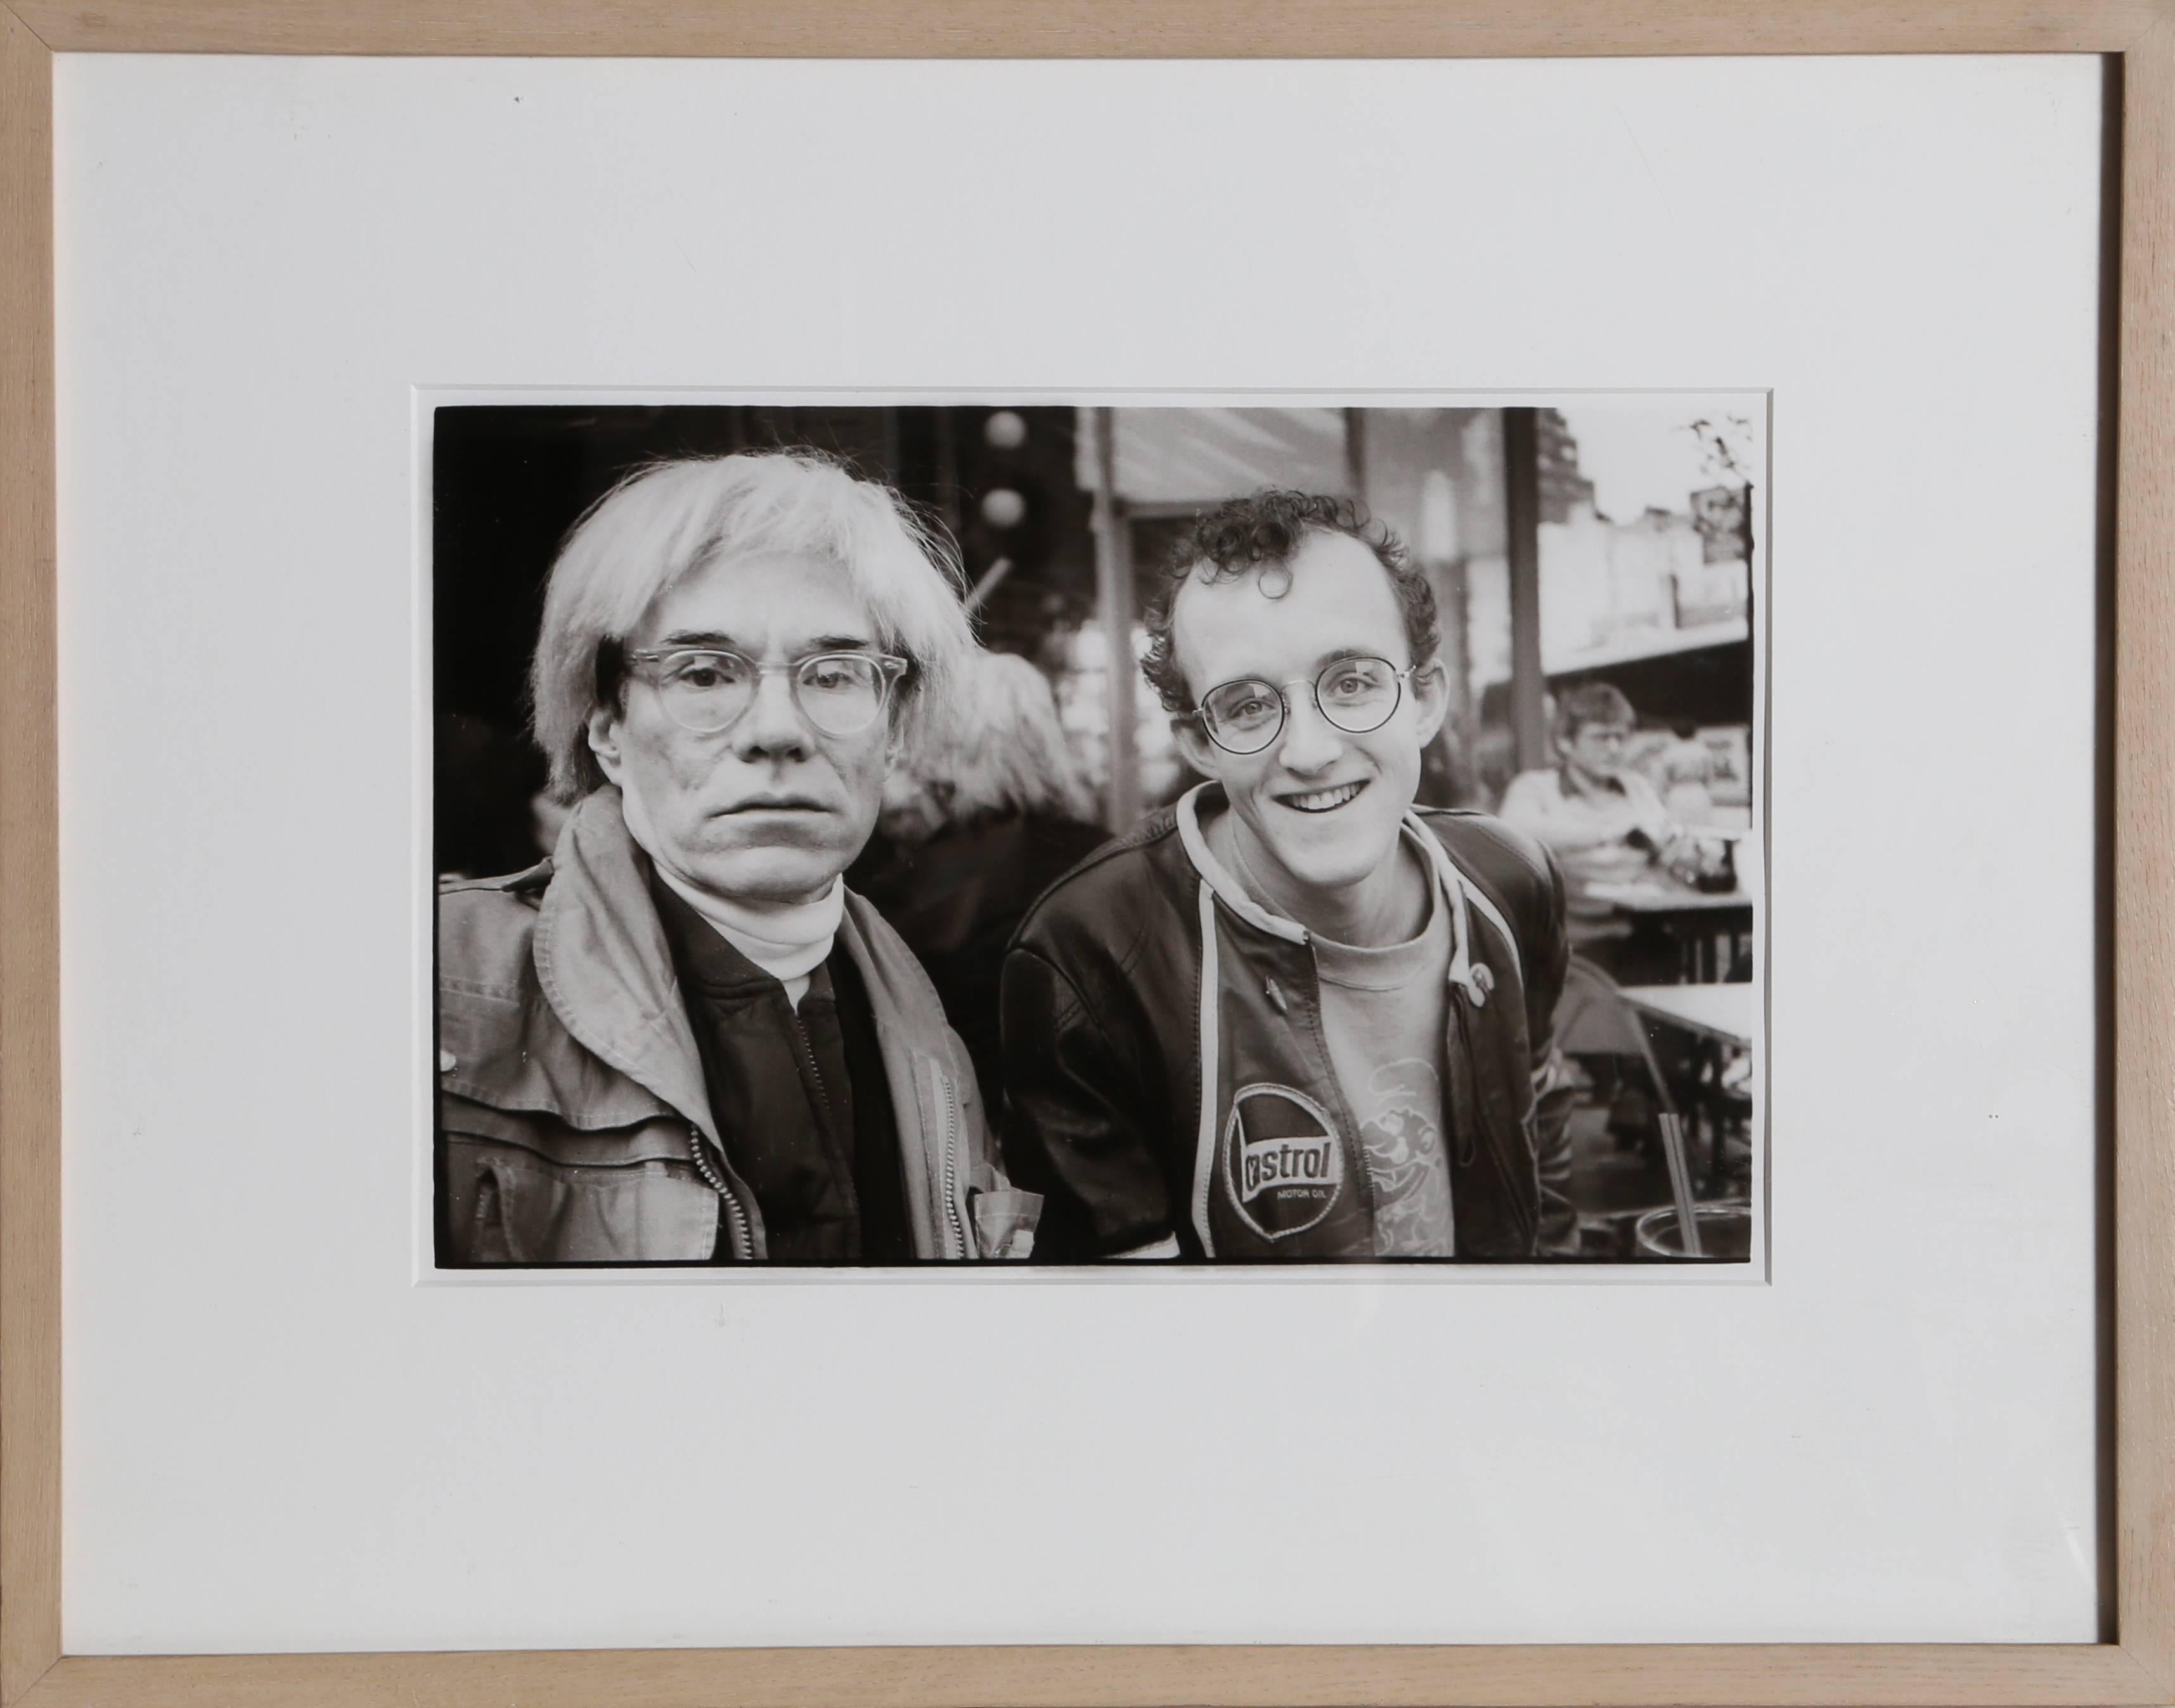 Artistics : Christopher Makos, Américain (1948 - )
Titre :	Andy Warhol et Keith Haring
Année :	1983
Moyen :	Photographie imprimée à la gélatine argentique, signée, tamponnée et numérotée au verso
Edition : 1/5
Taille de l'image :	8 x 11